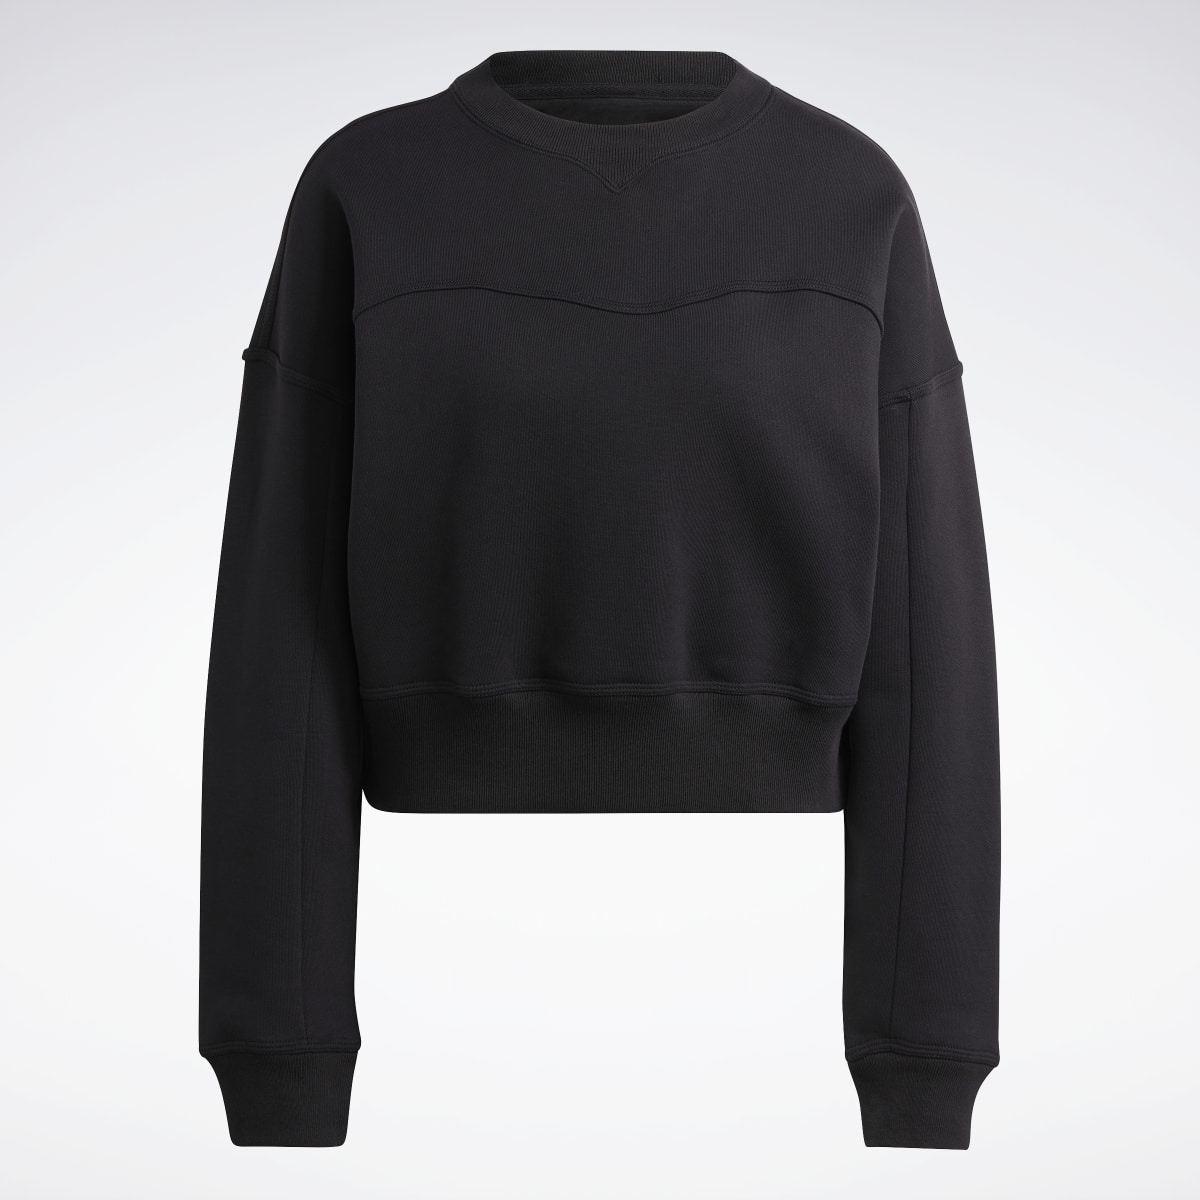 Adidas Lounge Fleece Sweatshirt. 5